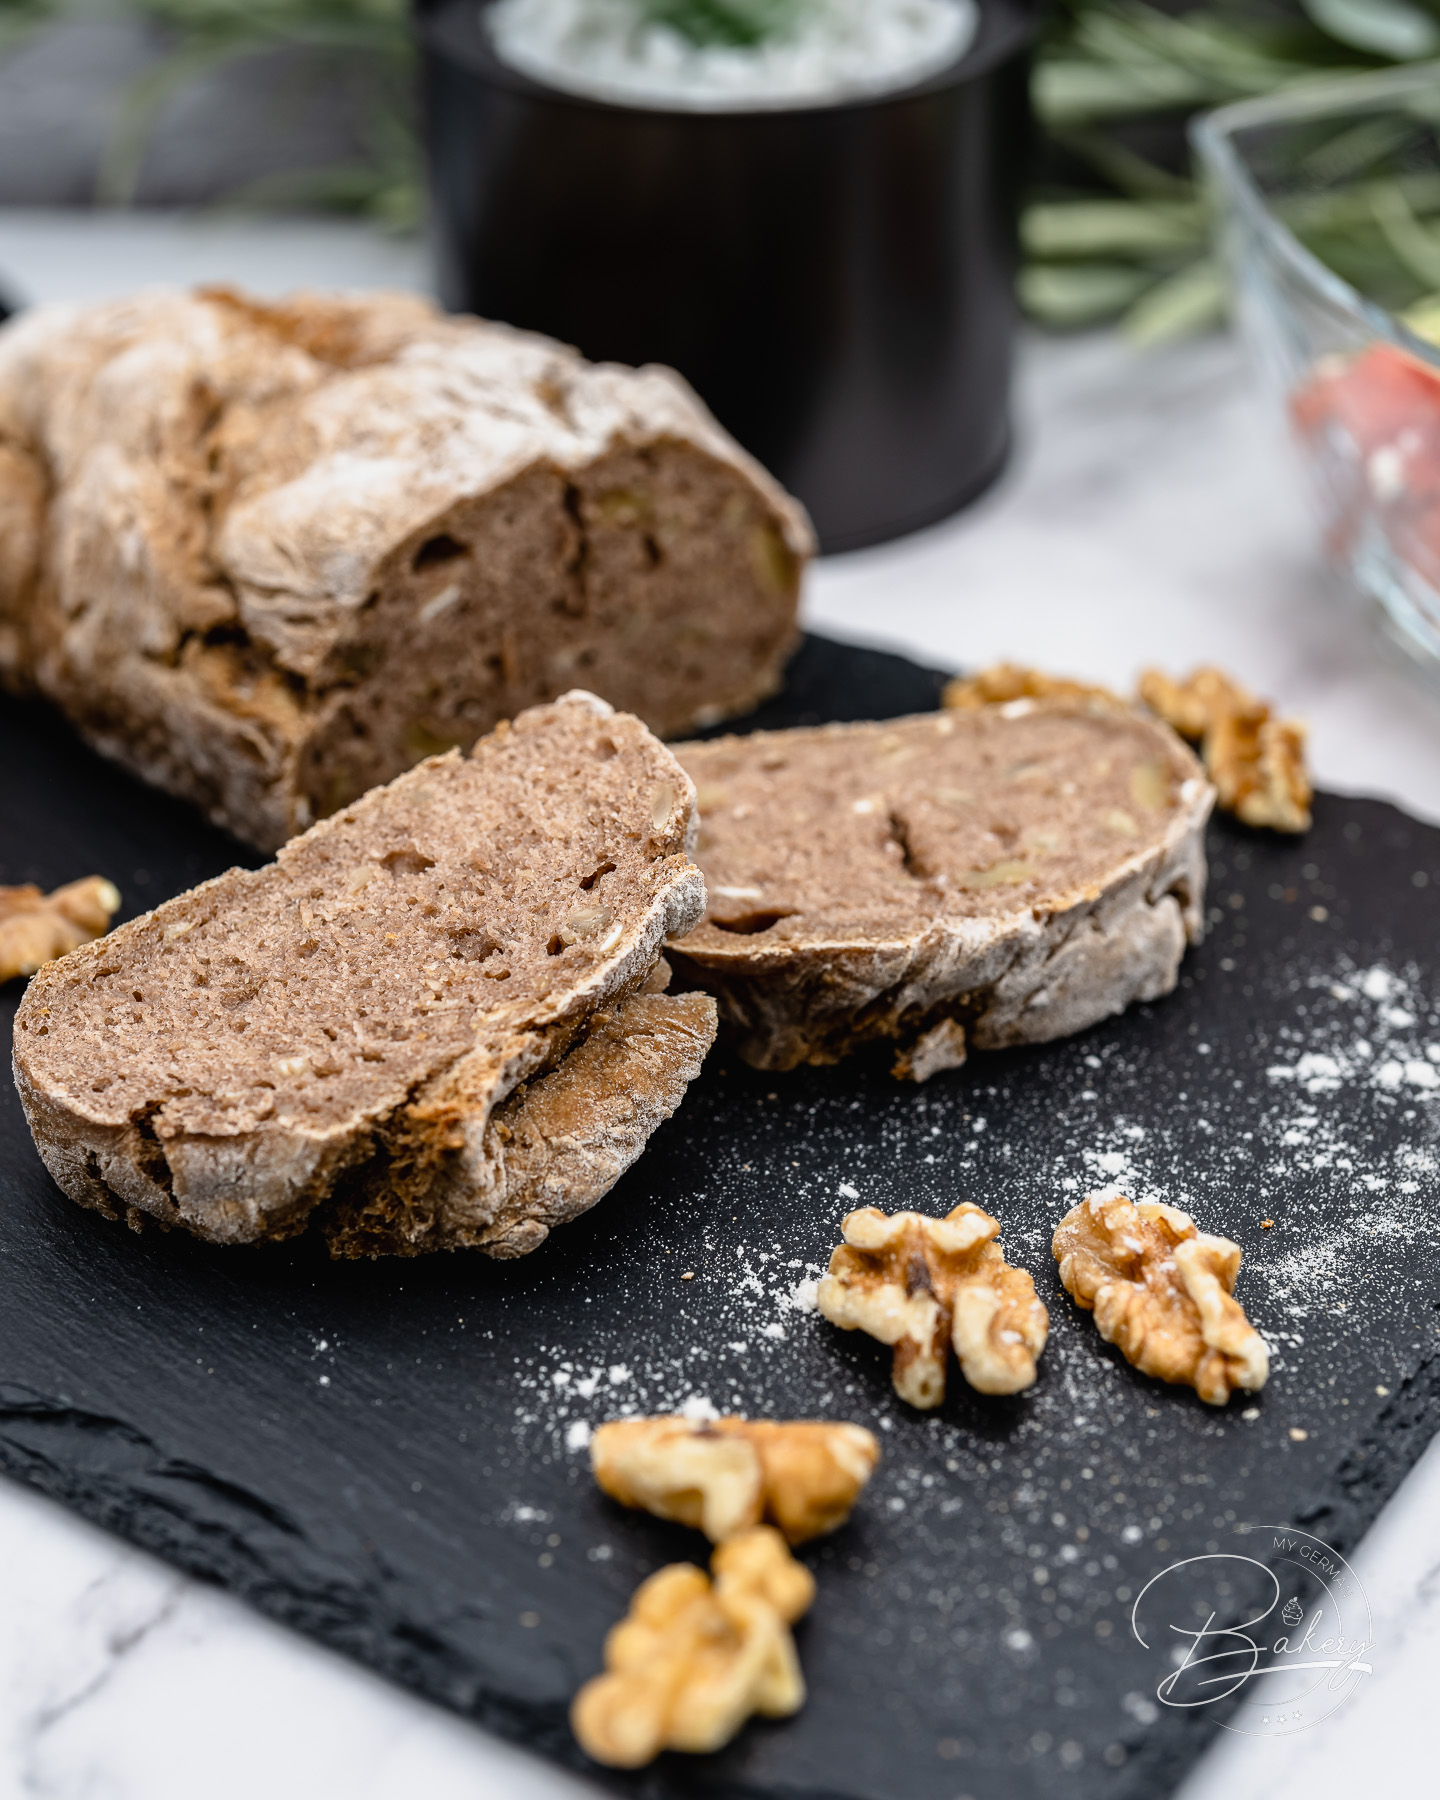 Vollkornbrot Rezept - dunkles Brot einfach selber backen - einfach, schnell, lecker - dunkles Brot backen - Vollkornbrot mit Walnüssen - gesundes und lockeres Brot zum Frühstück oder als Dinner-Brot zum Salat